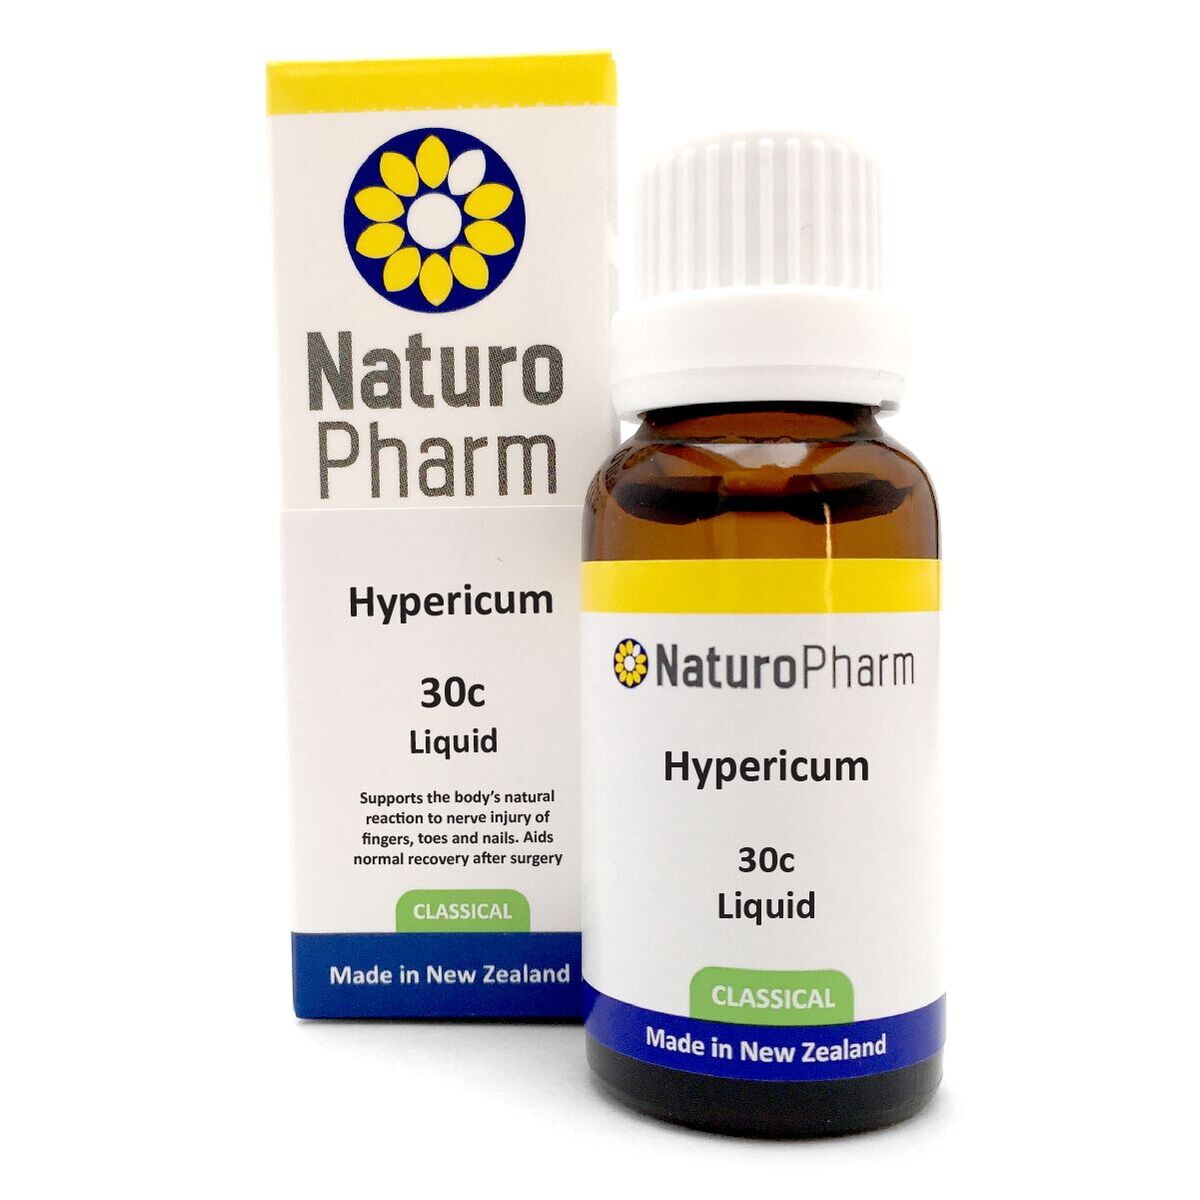 Naturo Pharm Hypericum 